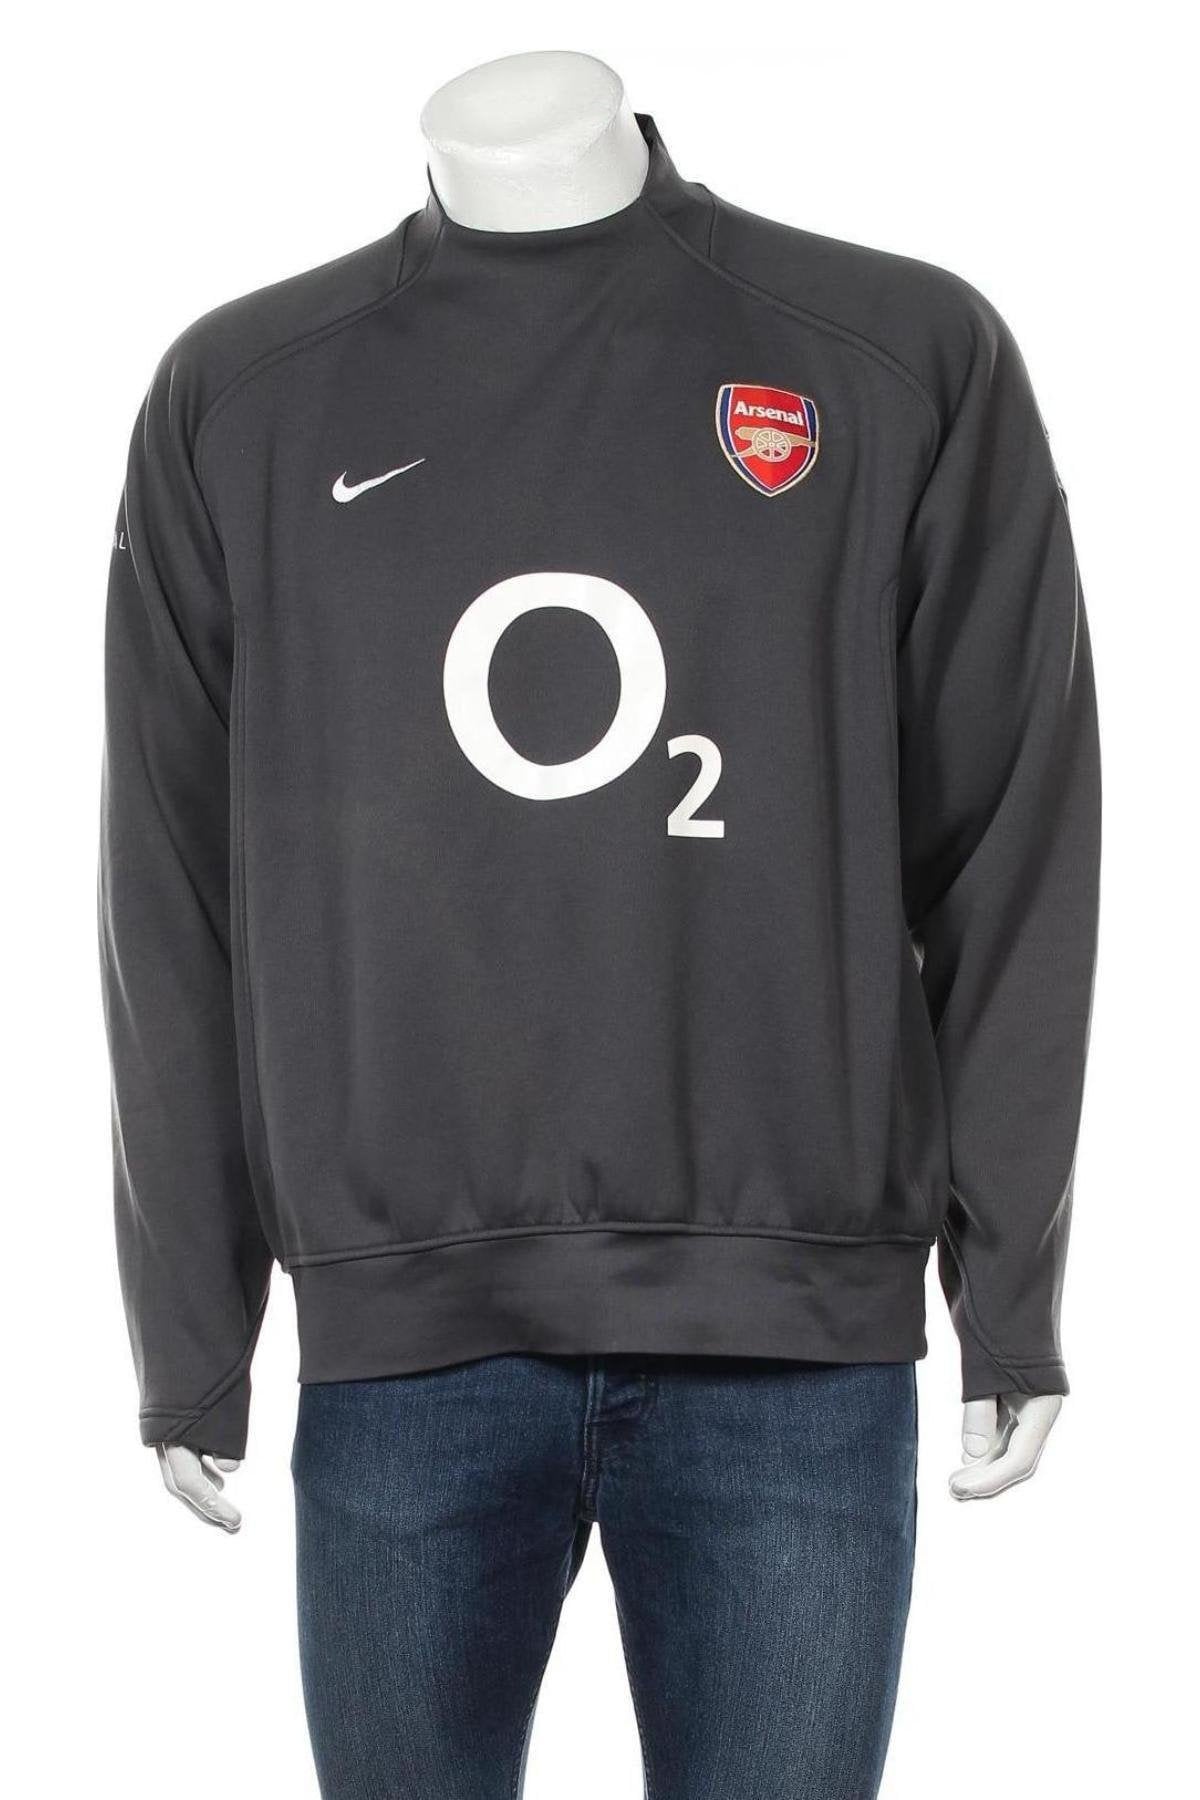 Vintage Nike Arsenal Crewneck sweatshirt sweater vintage Arsenal jersey